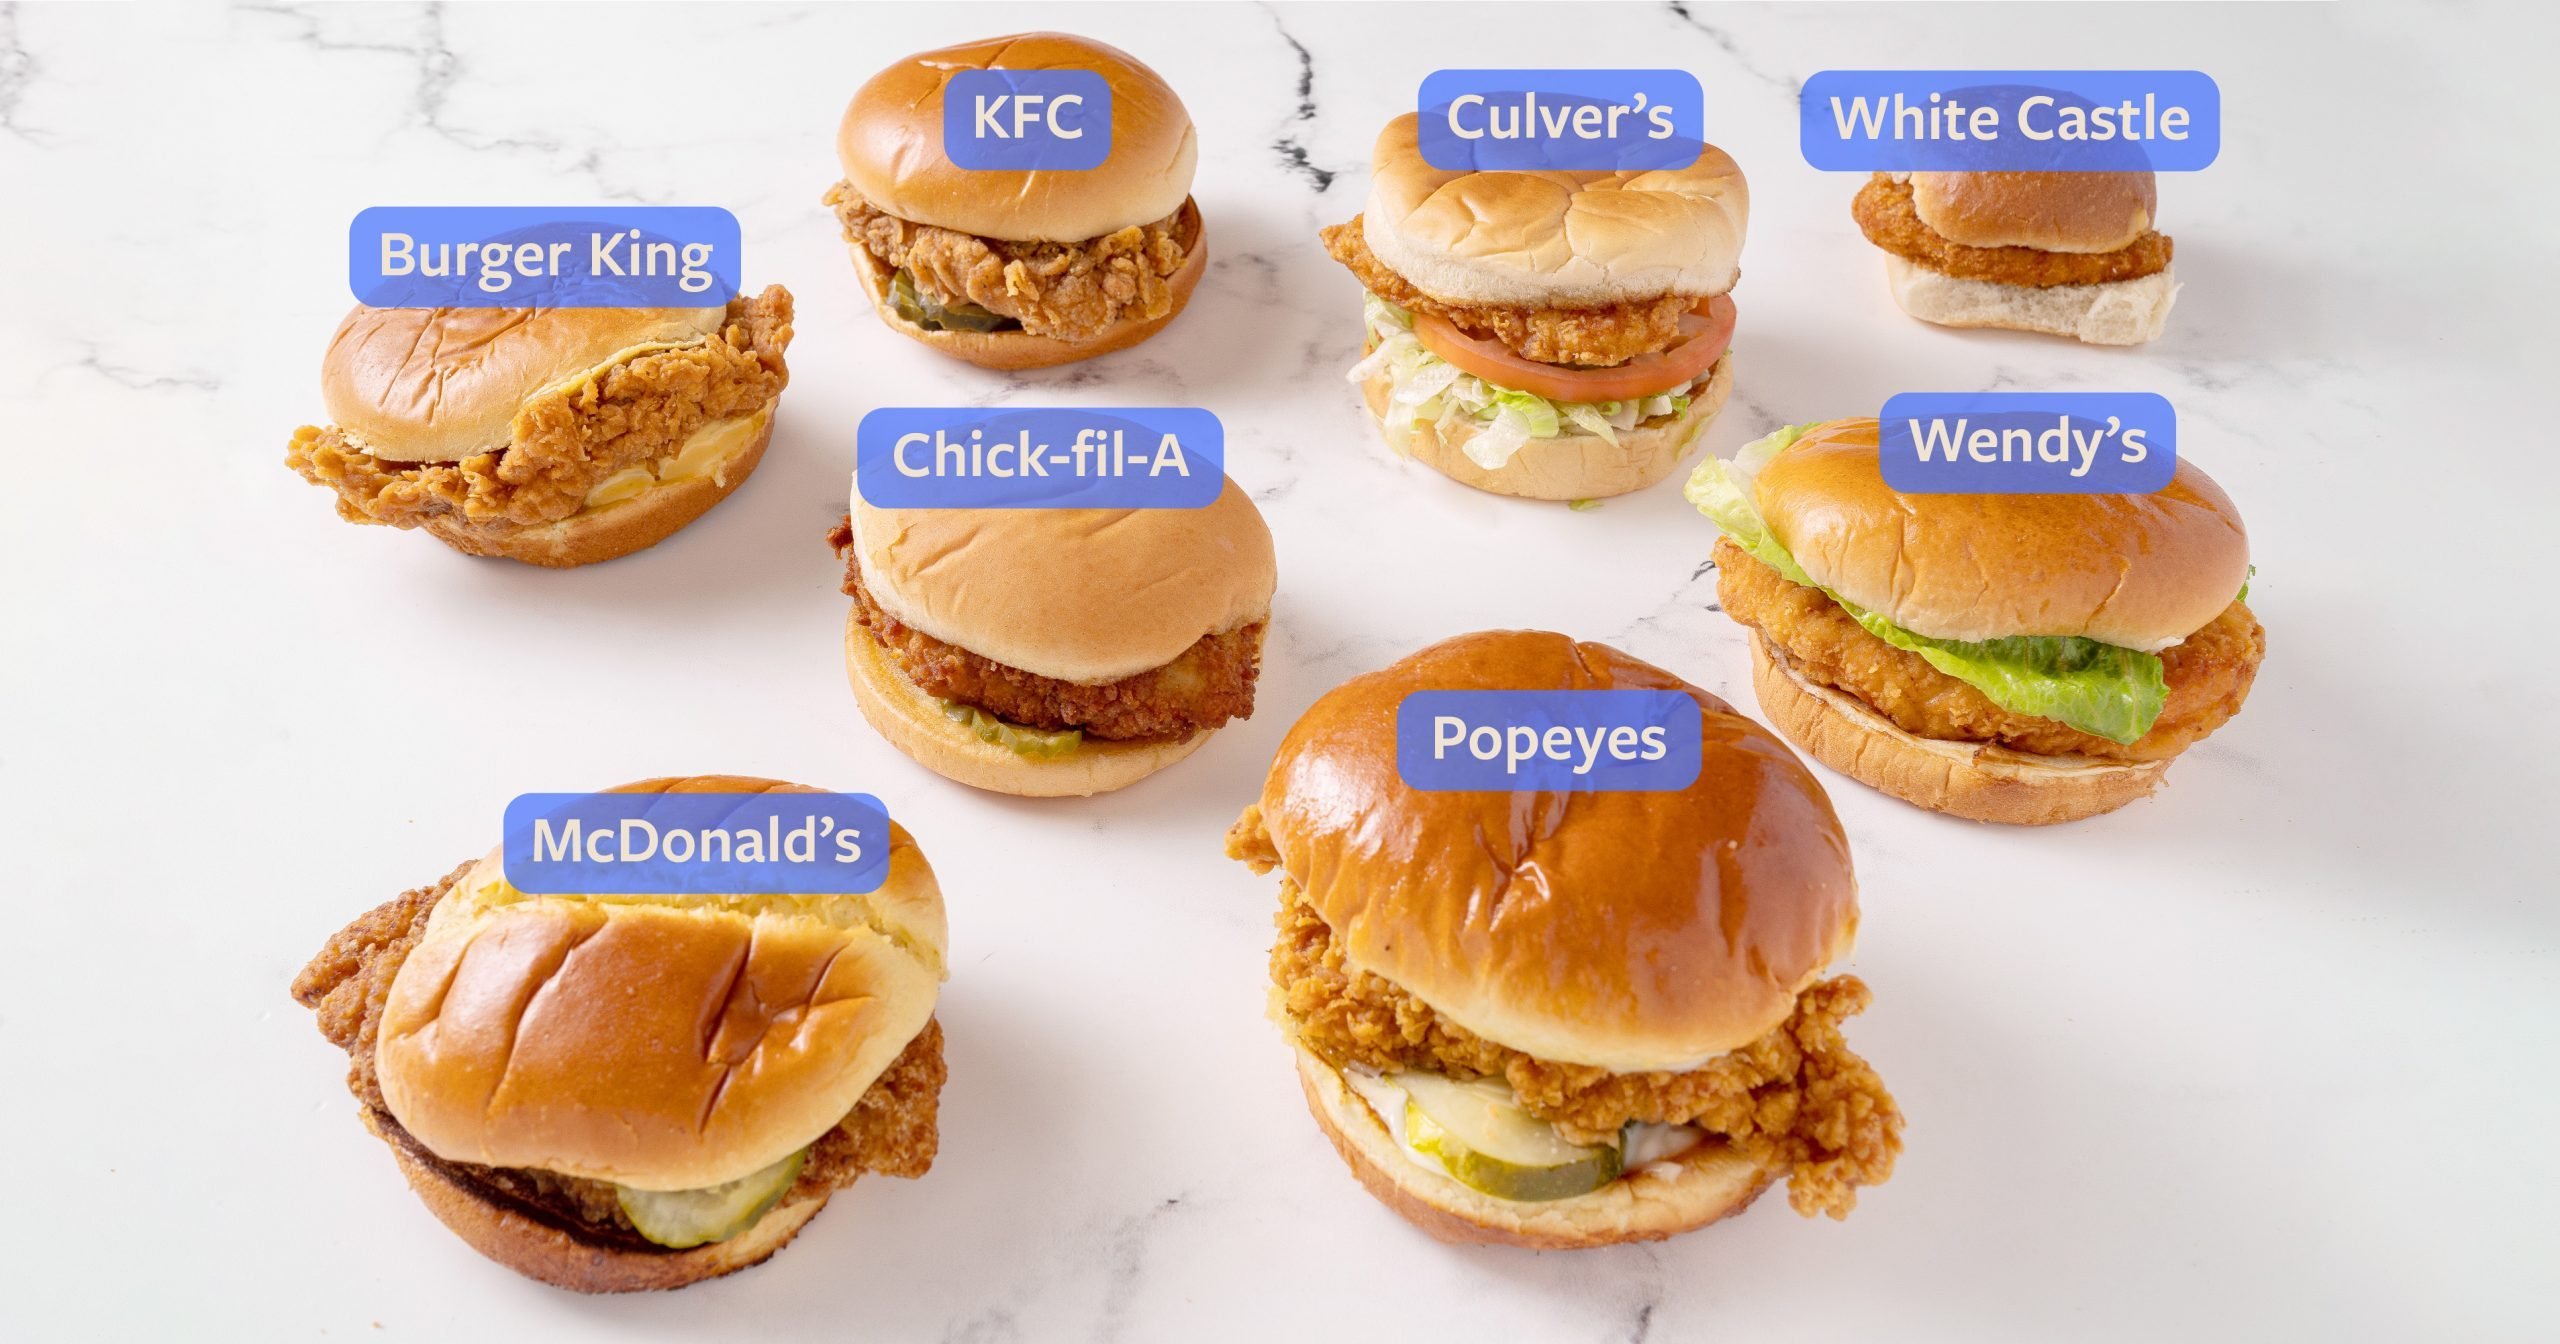 We Sampled 8 Restaurants to Find the Best Fast-Food Chicken Sandwich